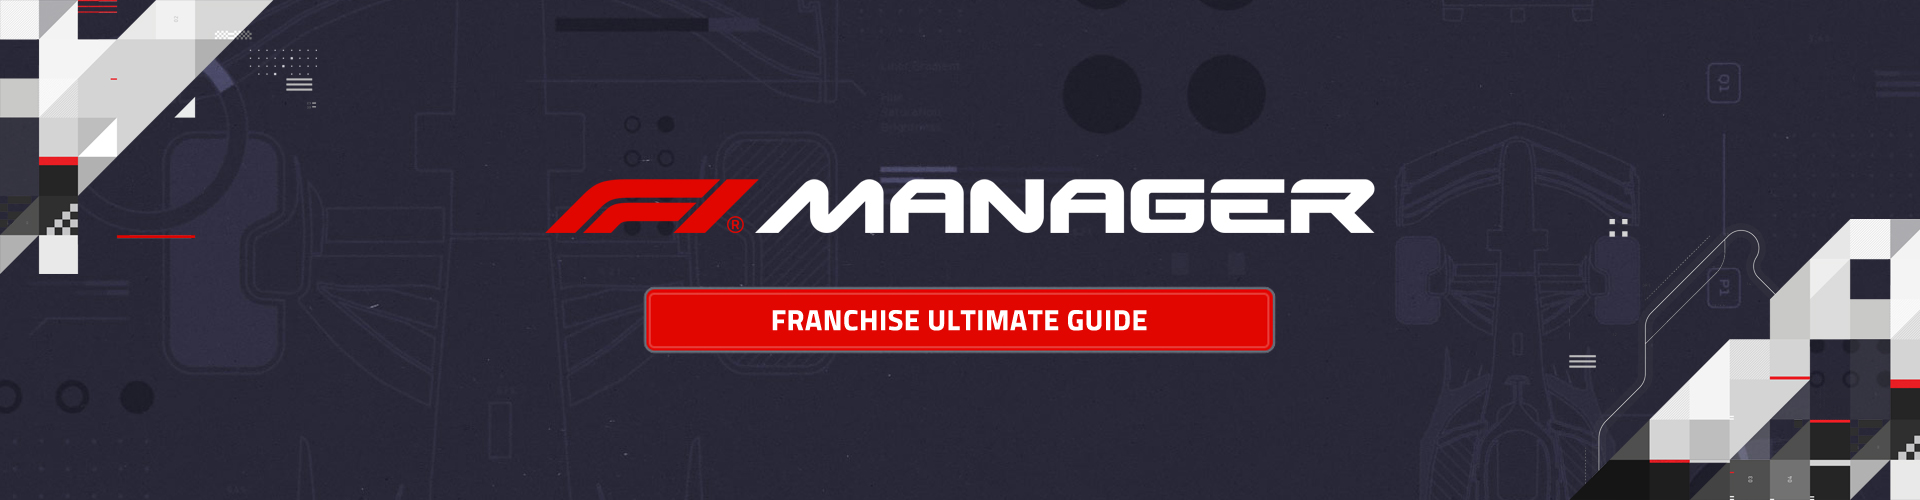 F1 Manager Games: The Formula 1 Management Franchise